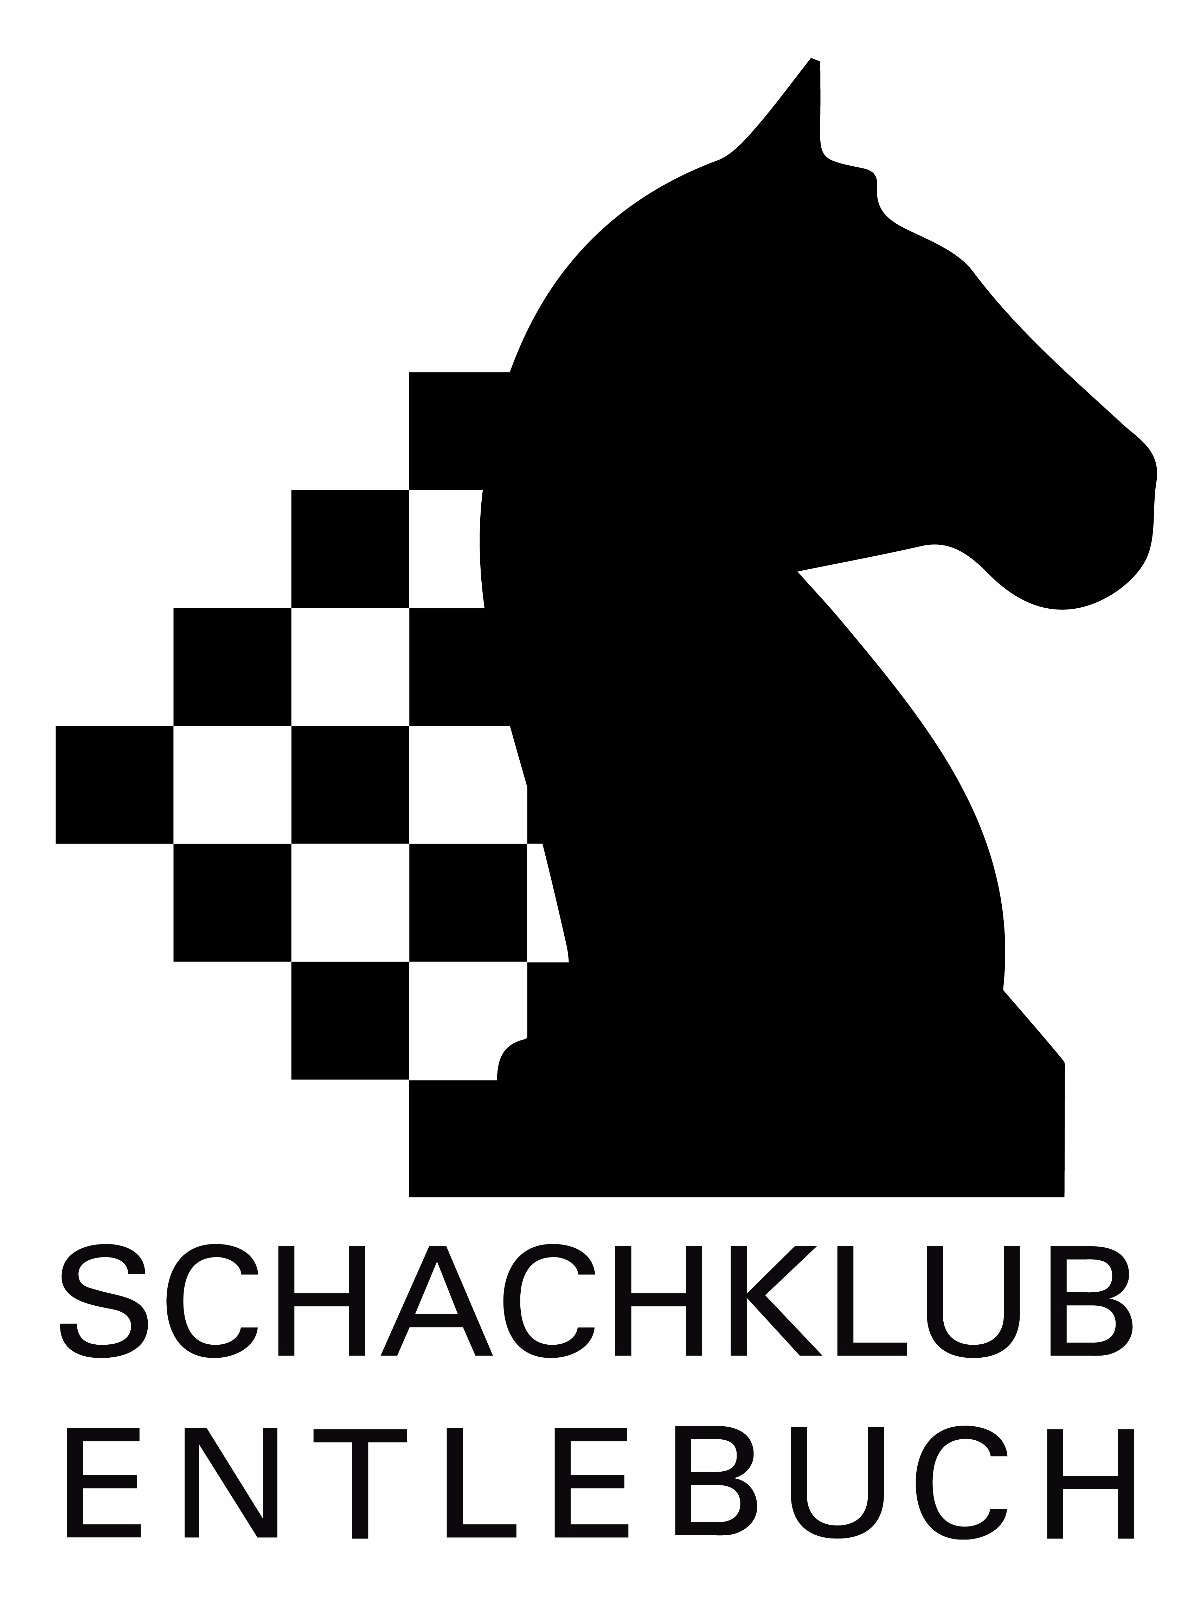 Schachklub Entlebuch